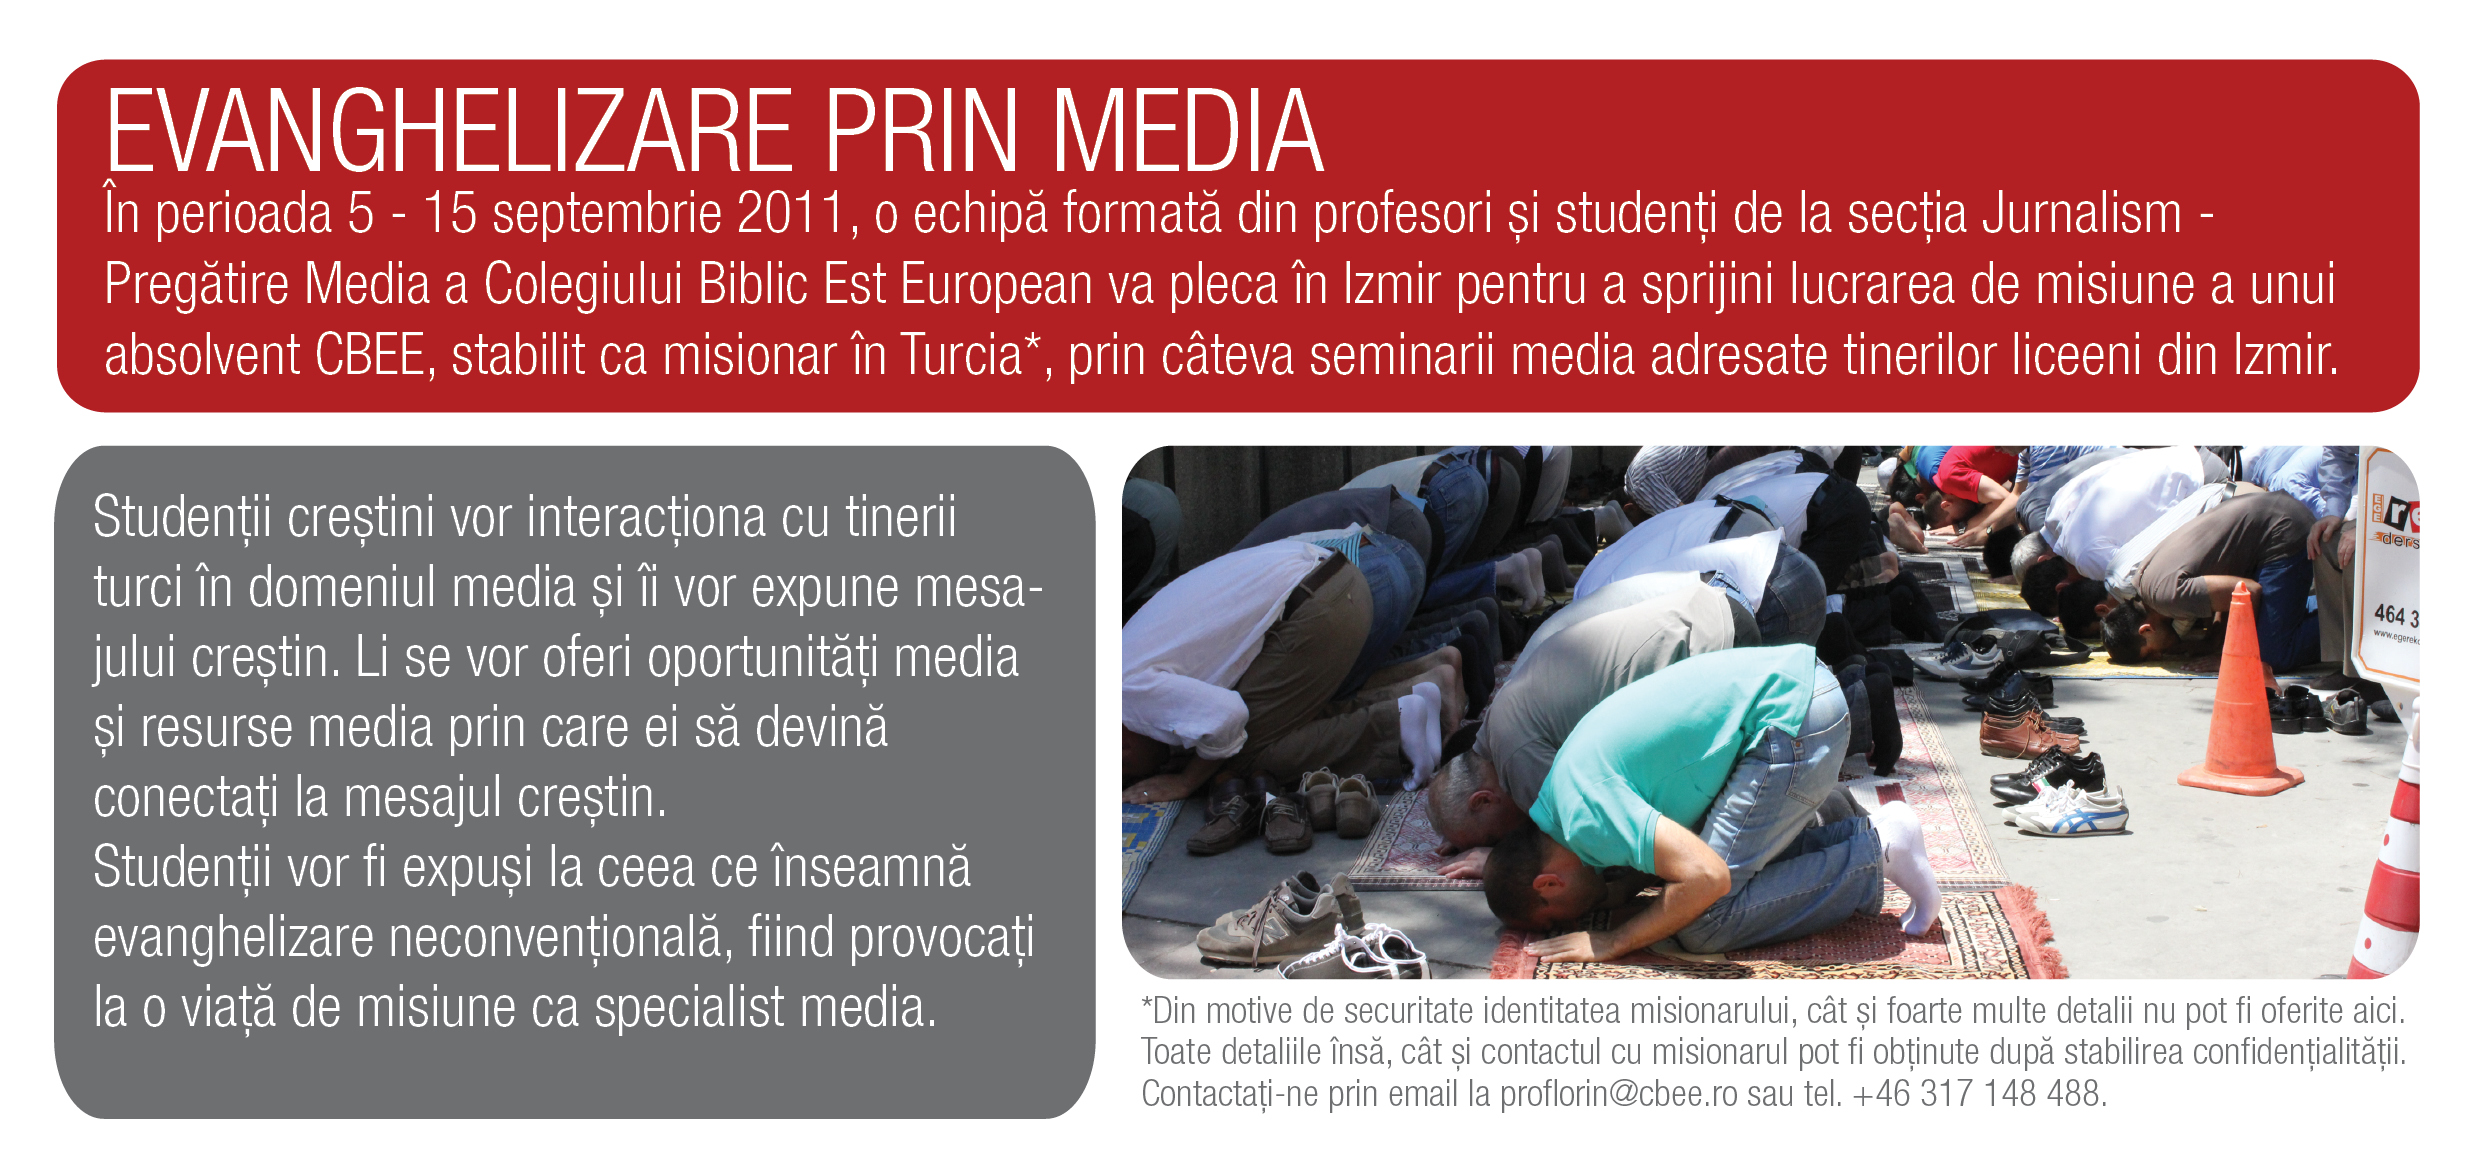 Misiune prin media in Turcia